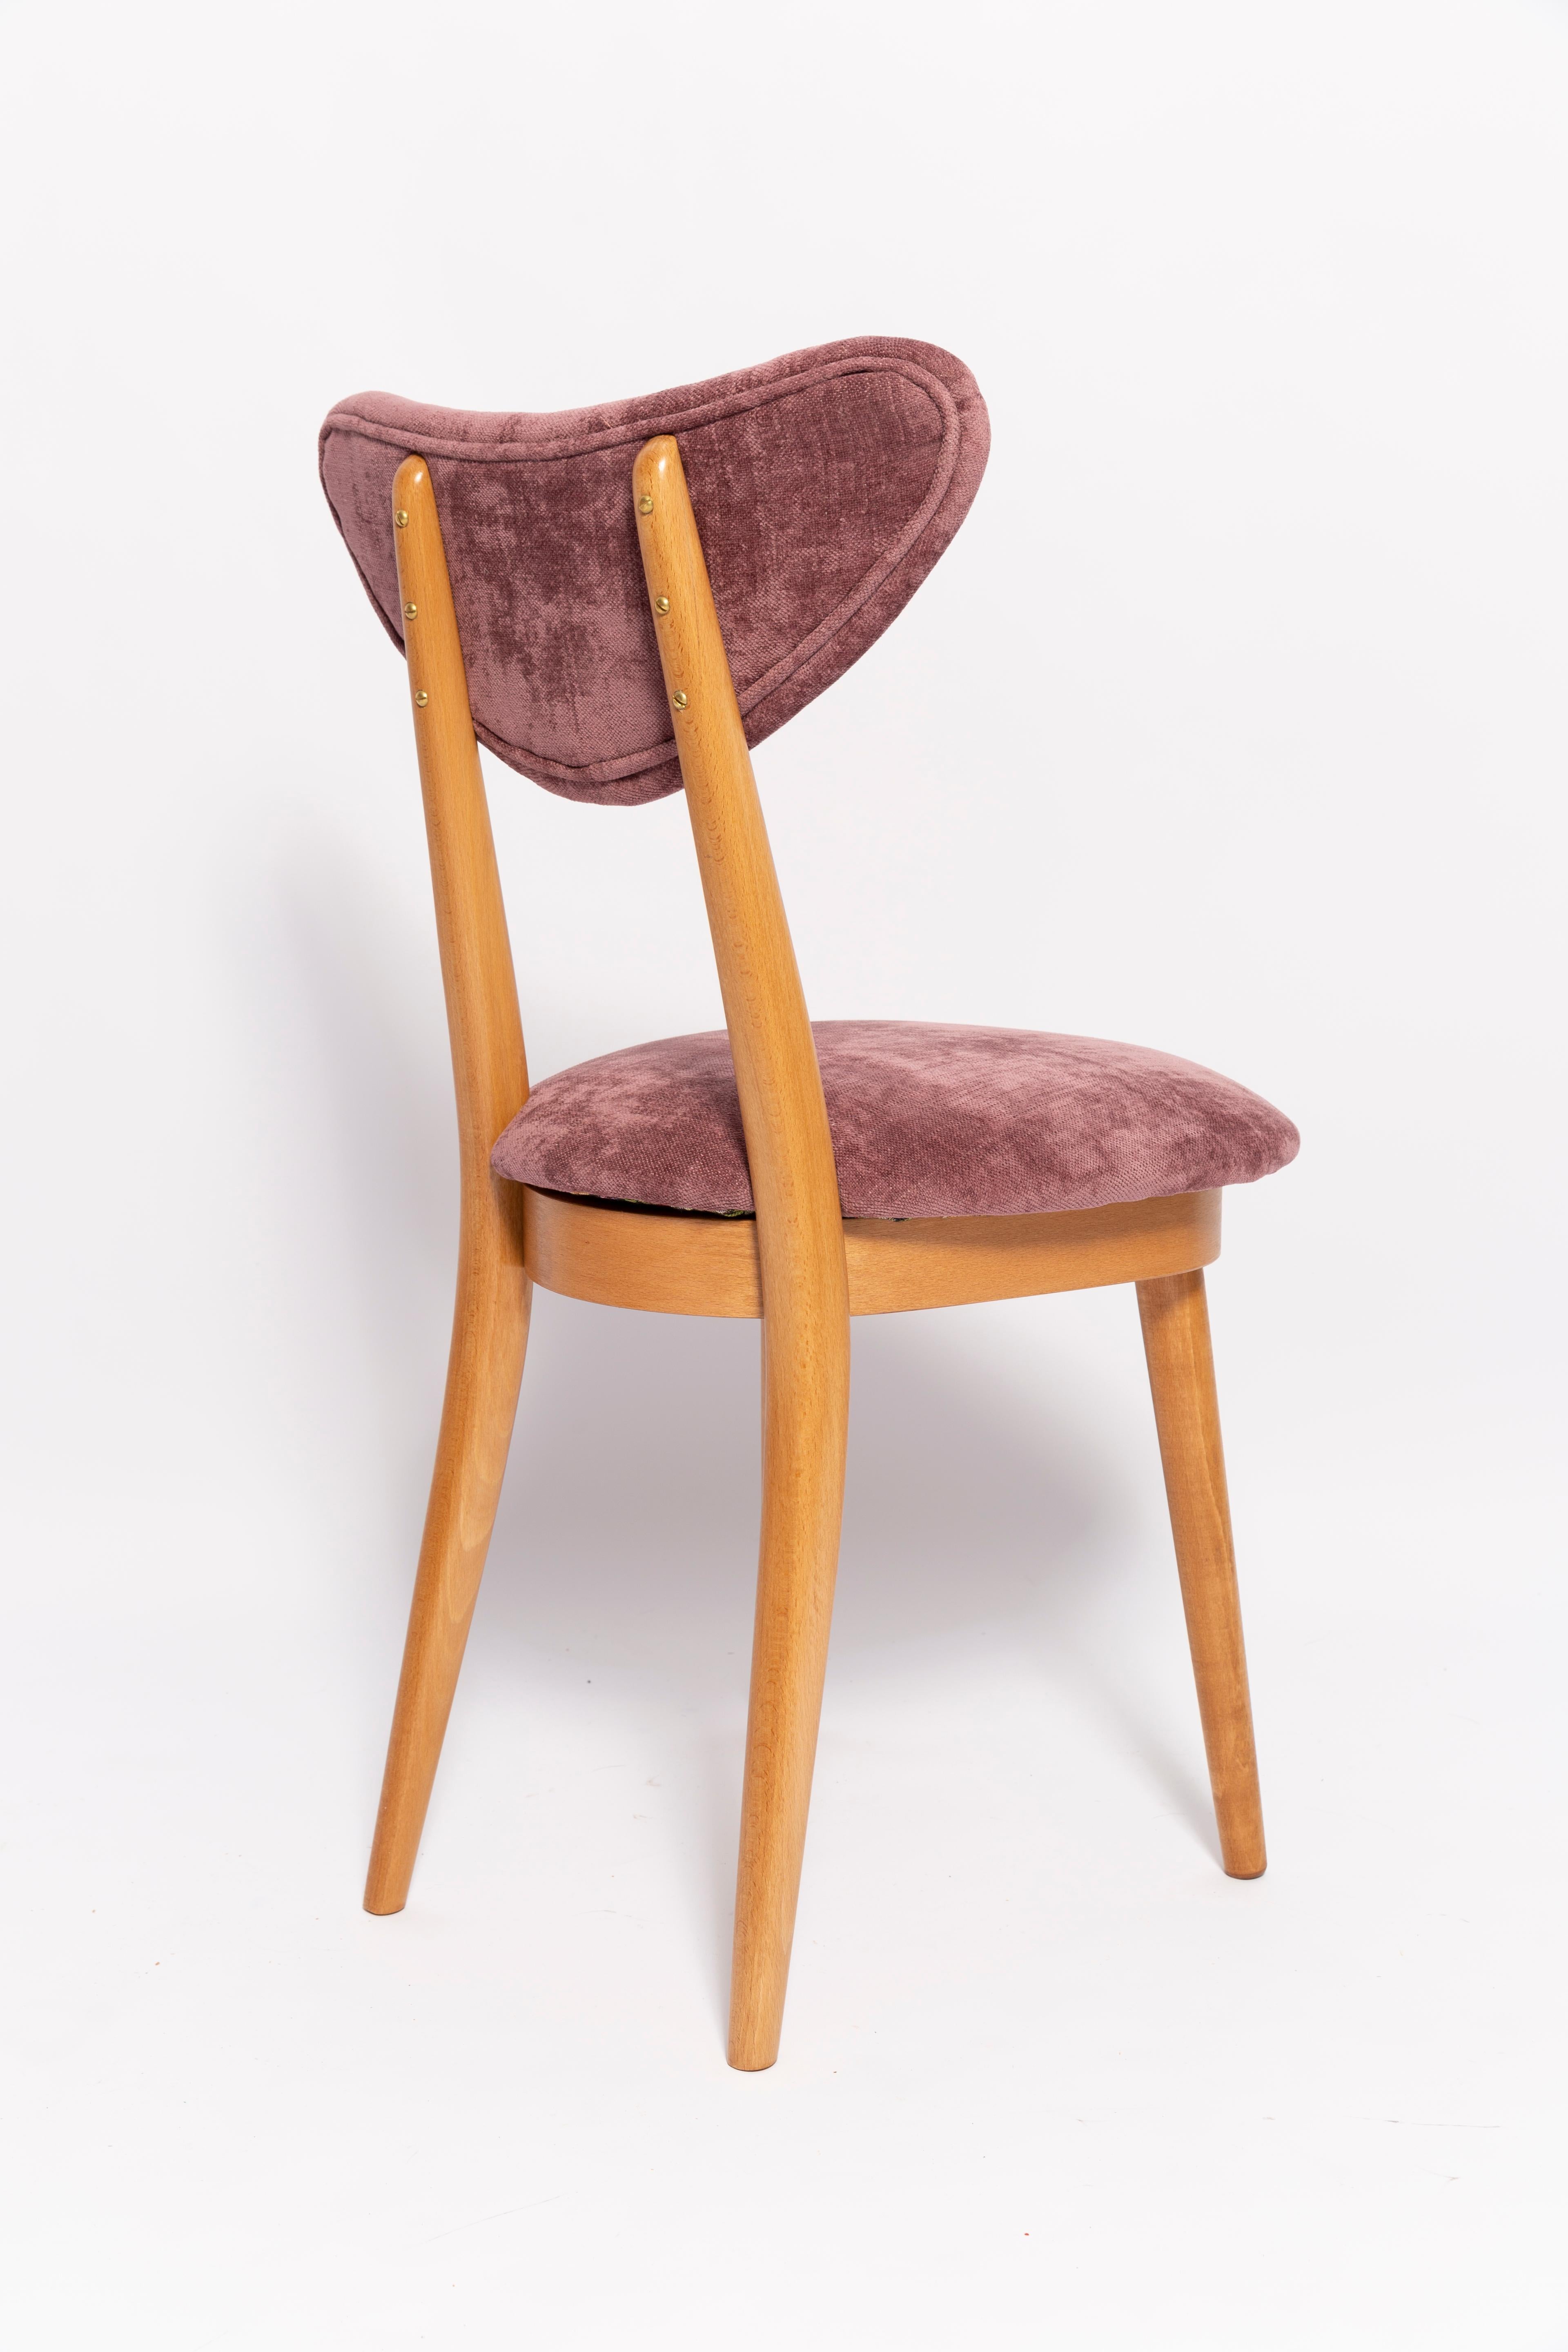 Midcentury Plum Violet Velvet, Light Wood Heart Chair, Europe, 1960s For Sale 2